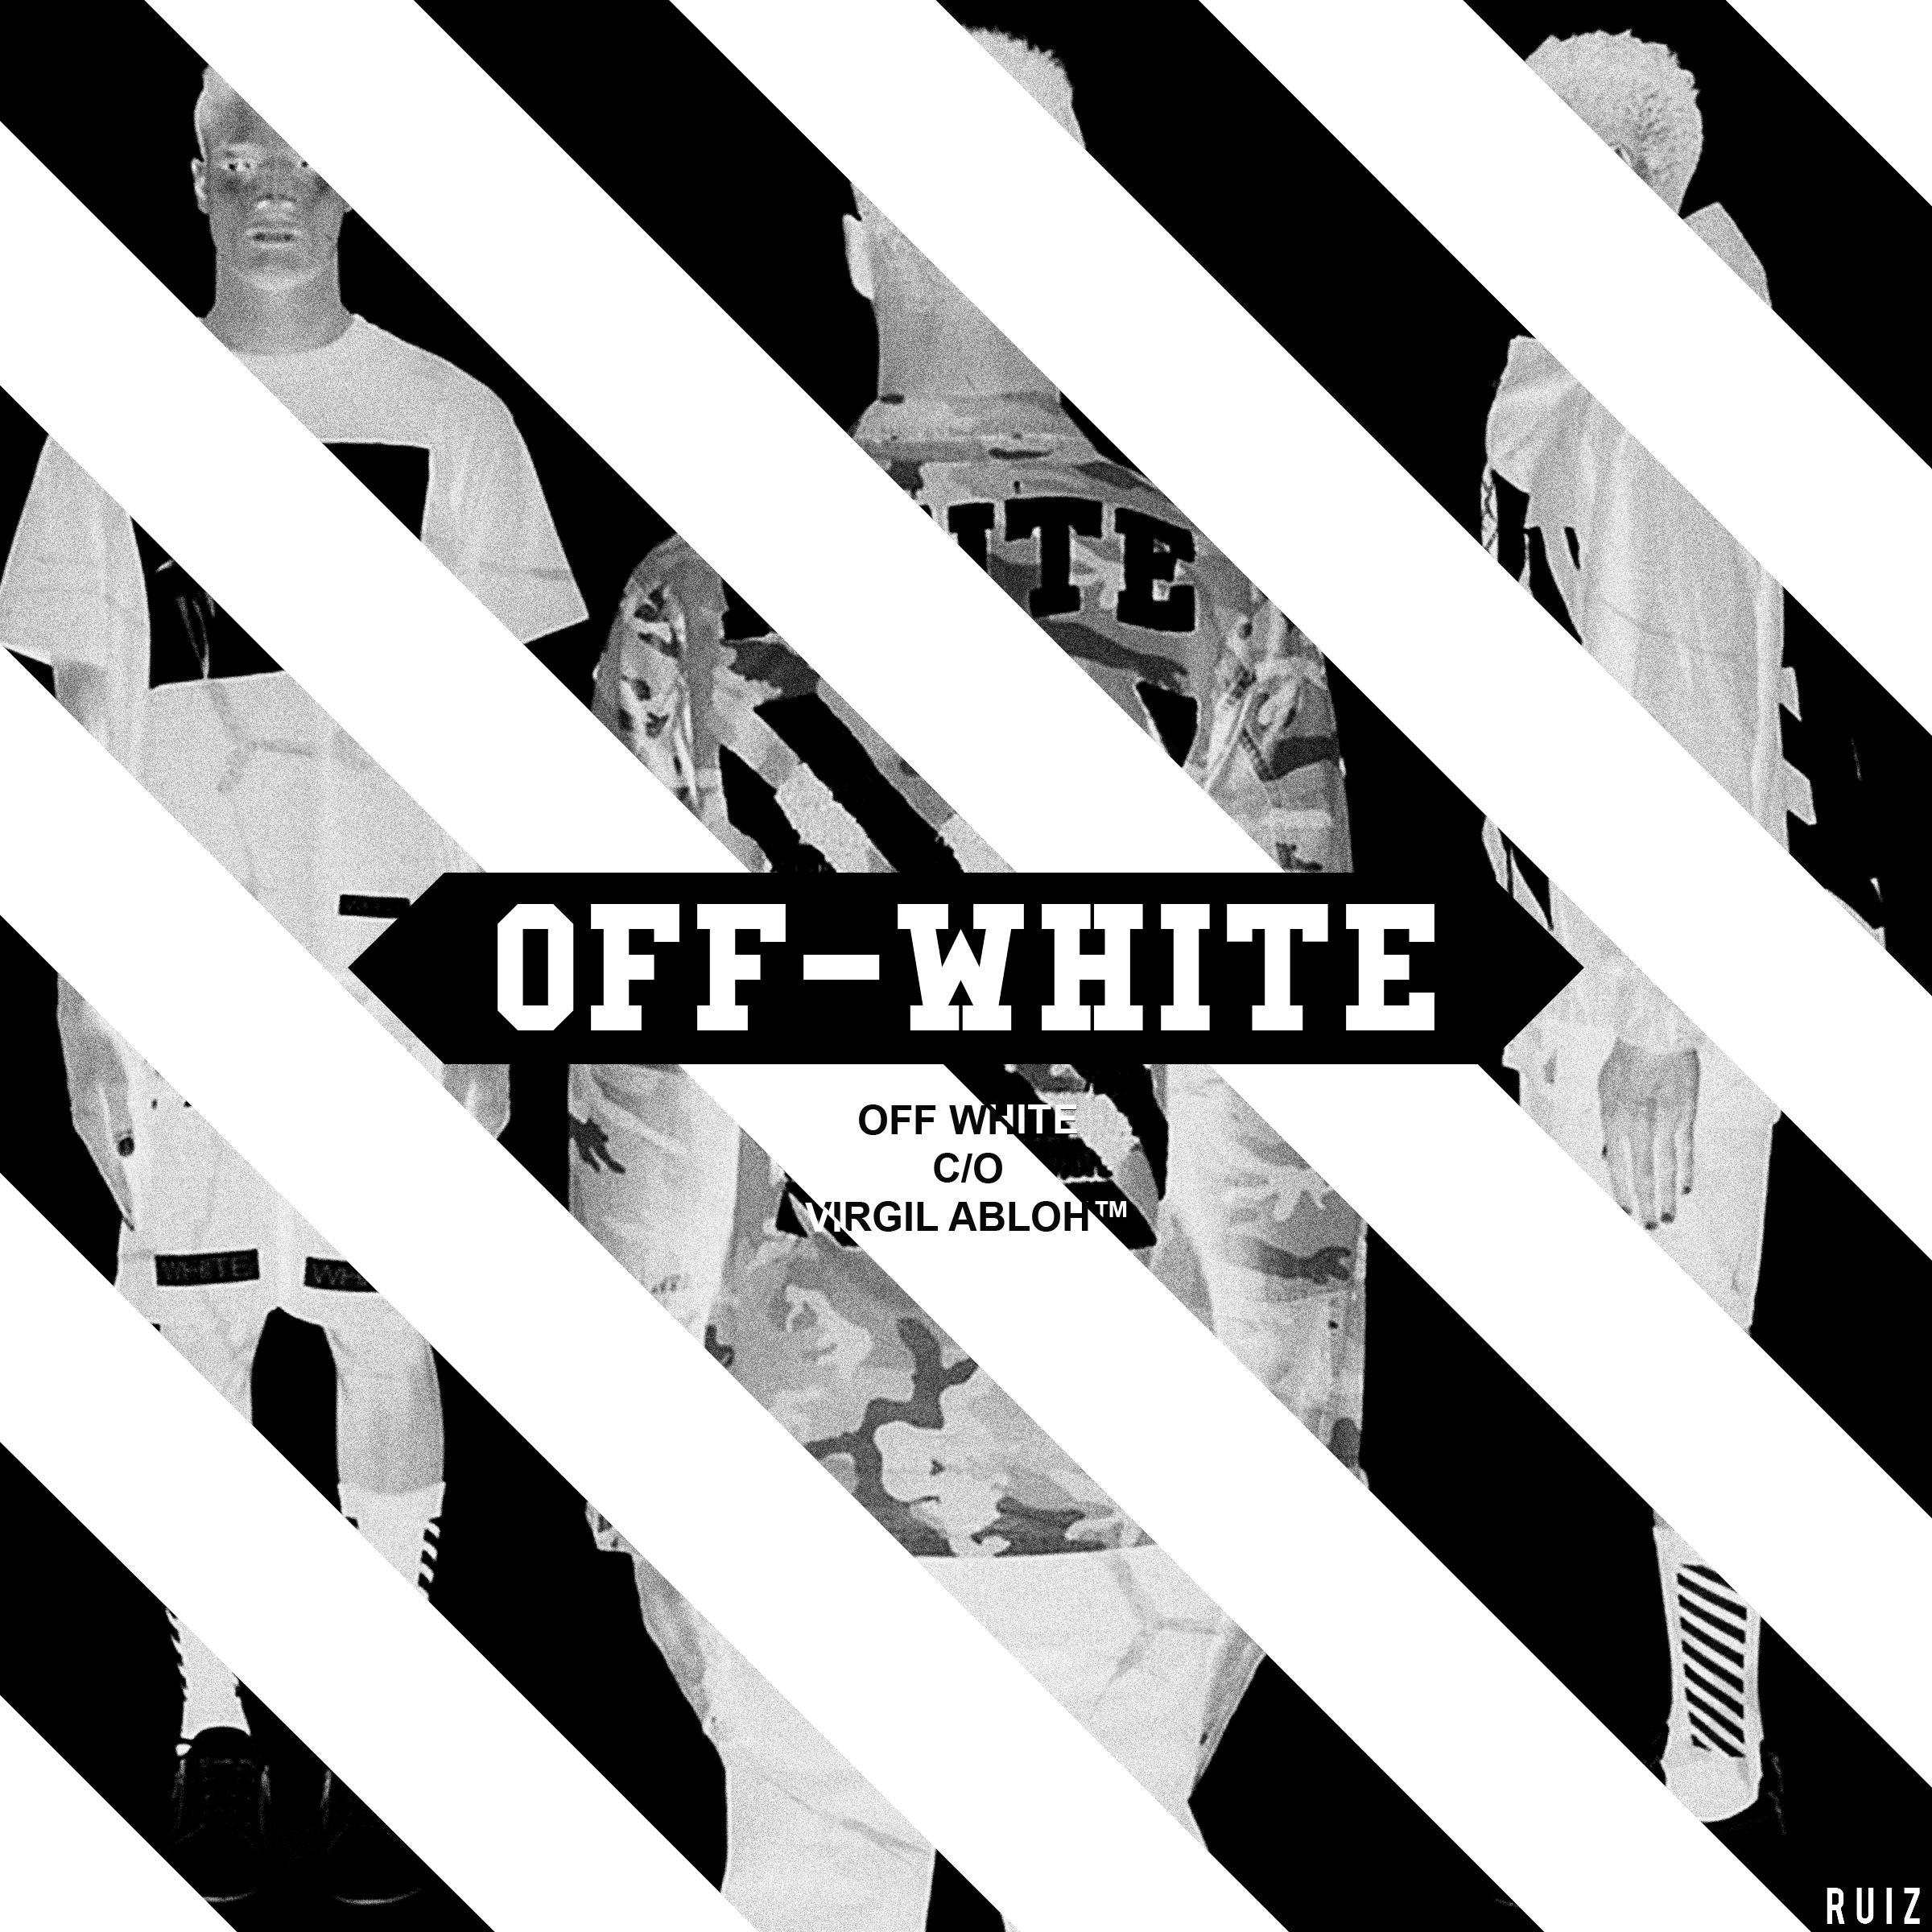 Off White Virgil Logo - Off-White c/o Virgil Abloh arrives in Malaysia. - MASSES